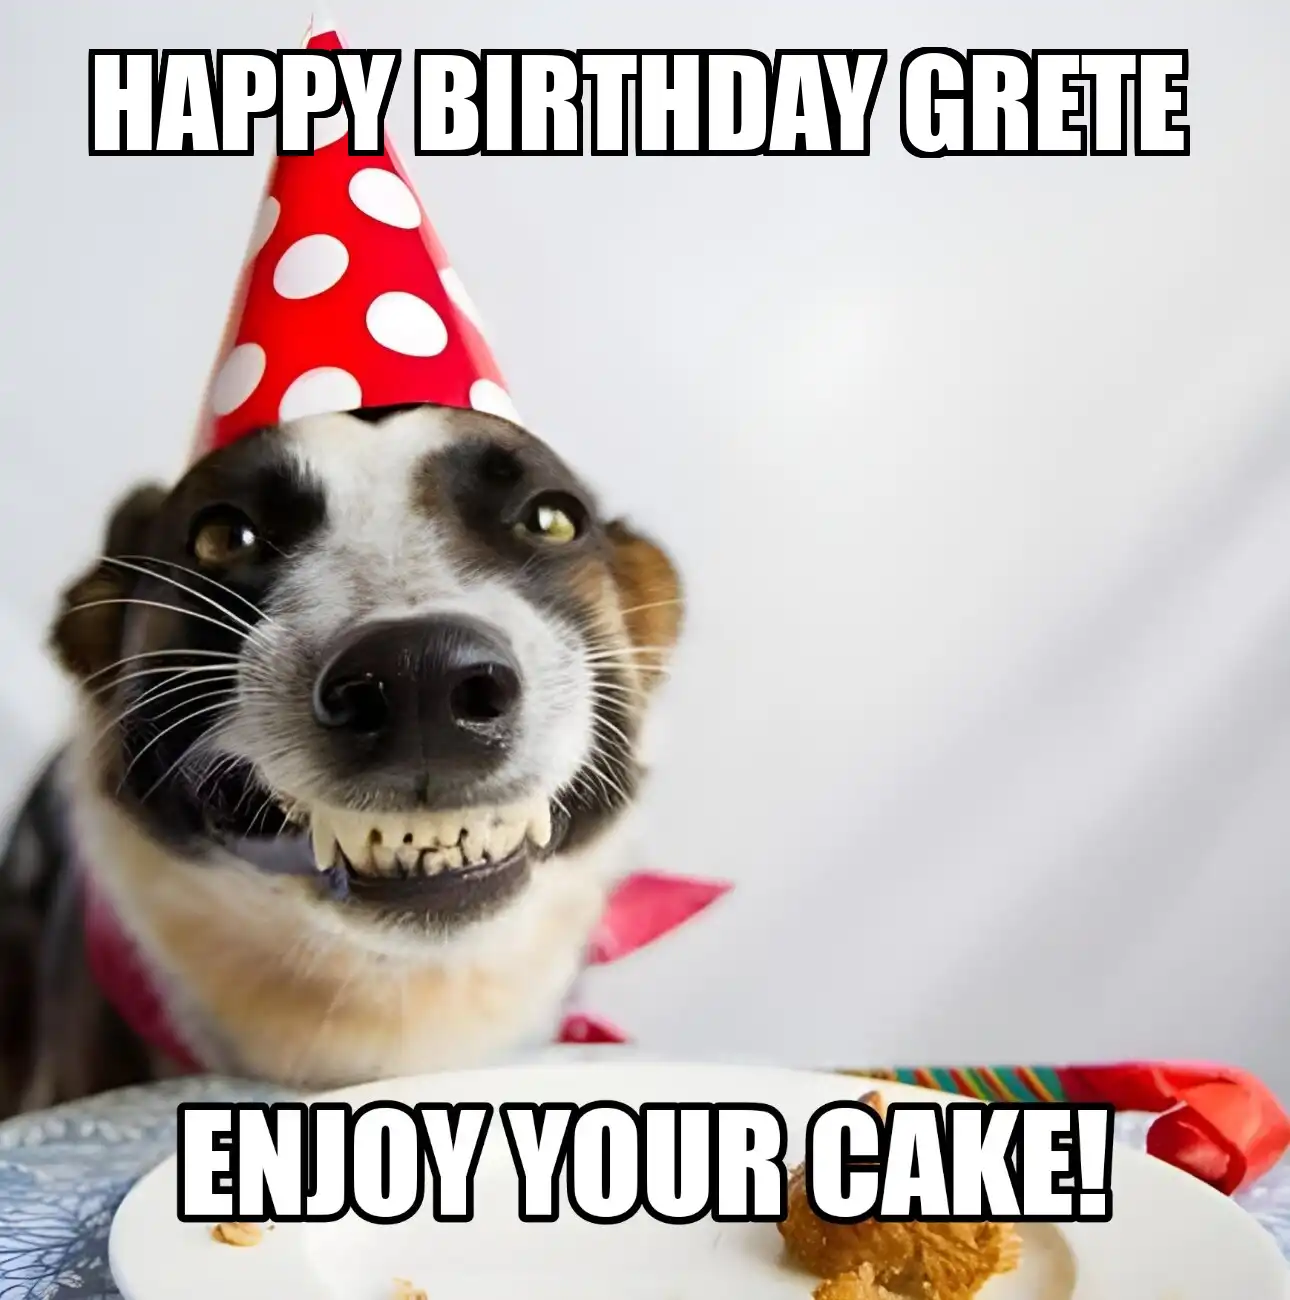 Happy Birthday Grete Enjoy Your Cake Dog Meme